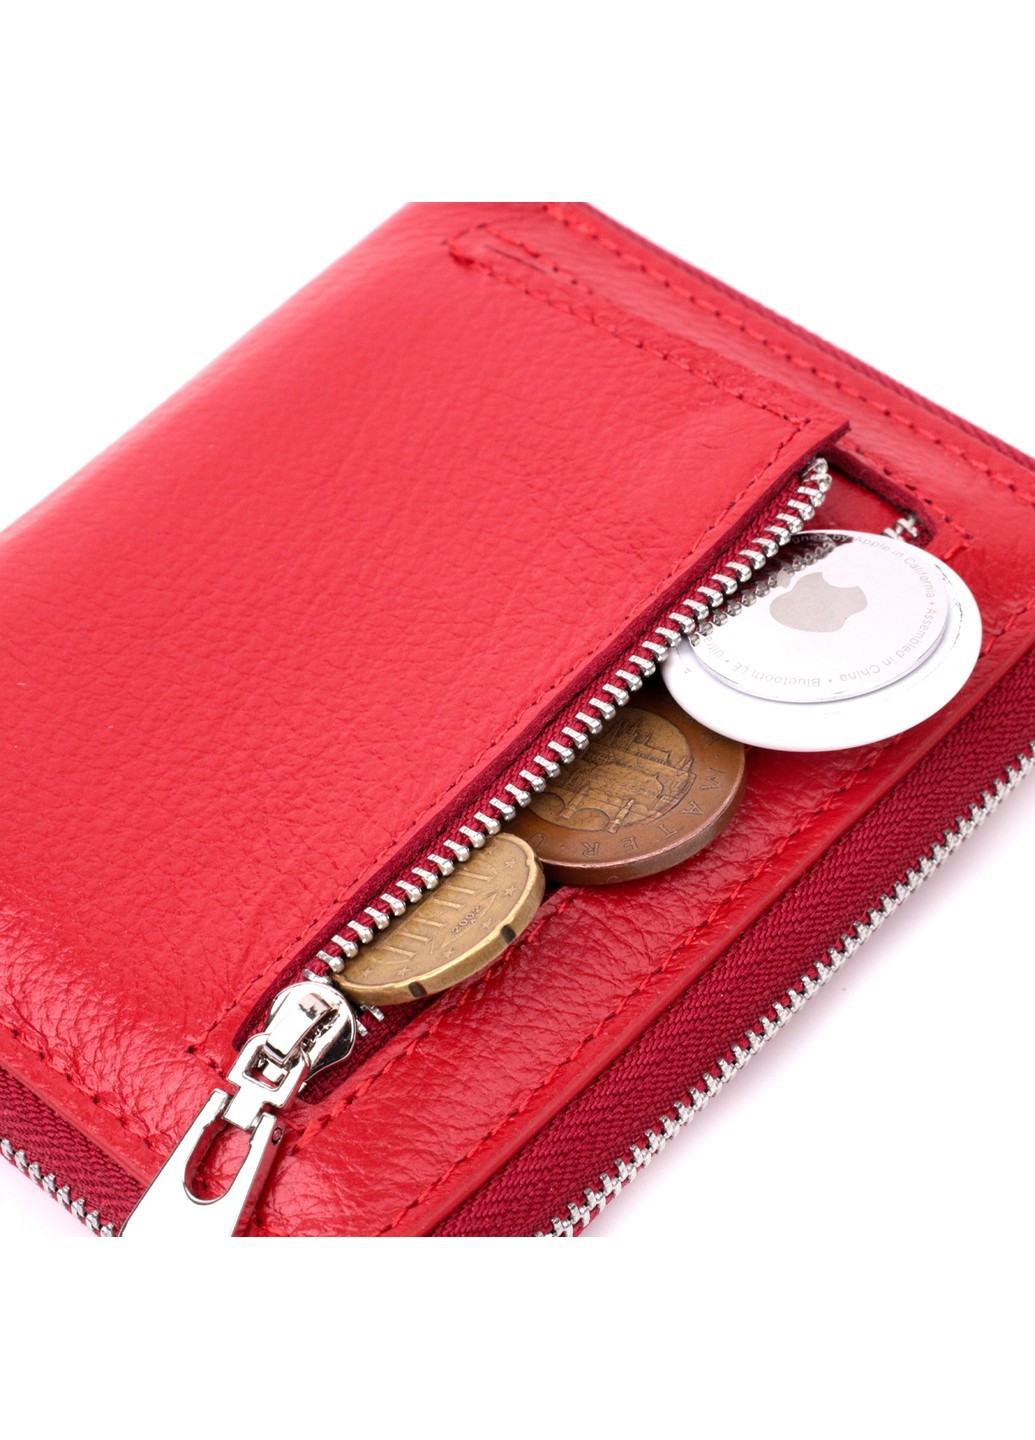 Кожаный женский кошелек на молнии с металлическим логотипом производителя 19484 Красный st leather (277980494)